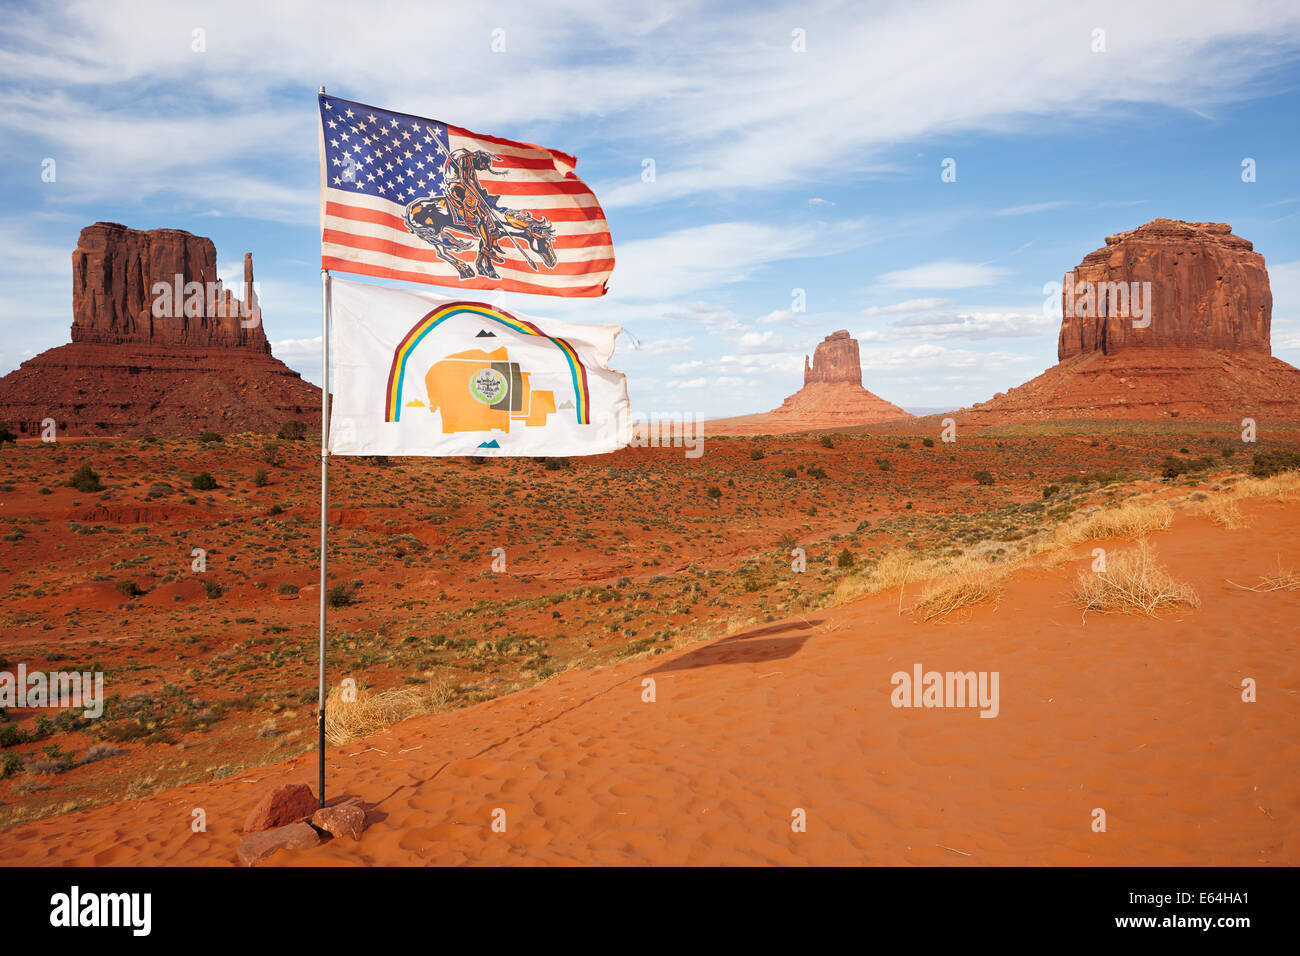 US-Fahne und Flagge der Navajo Nation fliegen zusammen im Monument Valley Navajo Tribal Park. Arizona, USA. Stockfoto